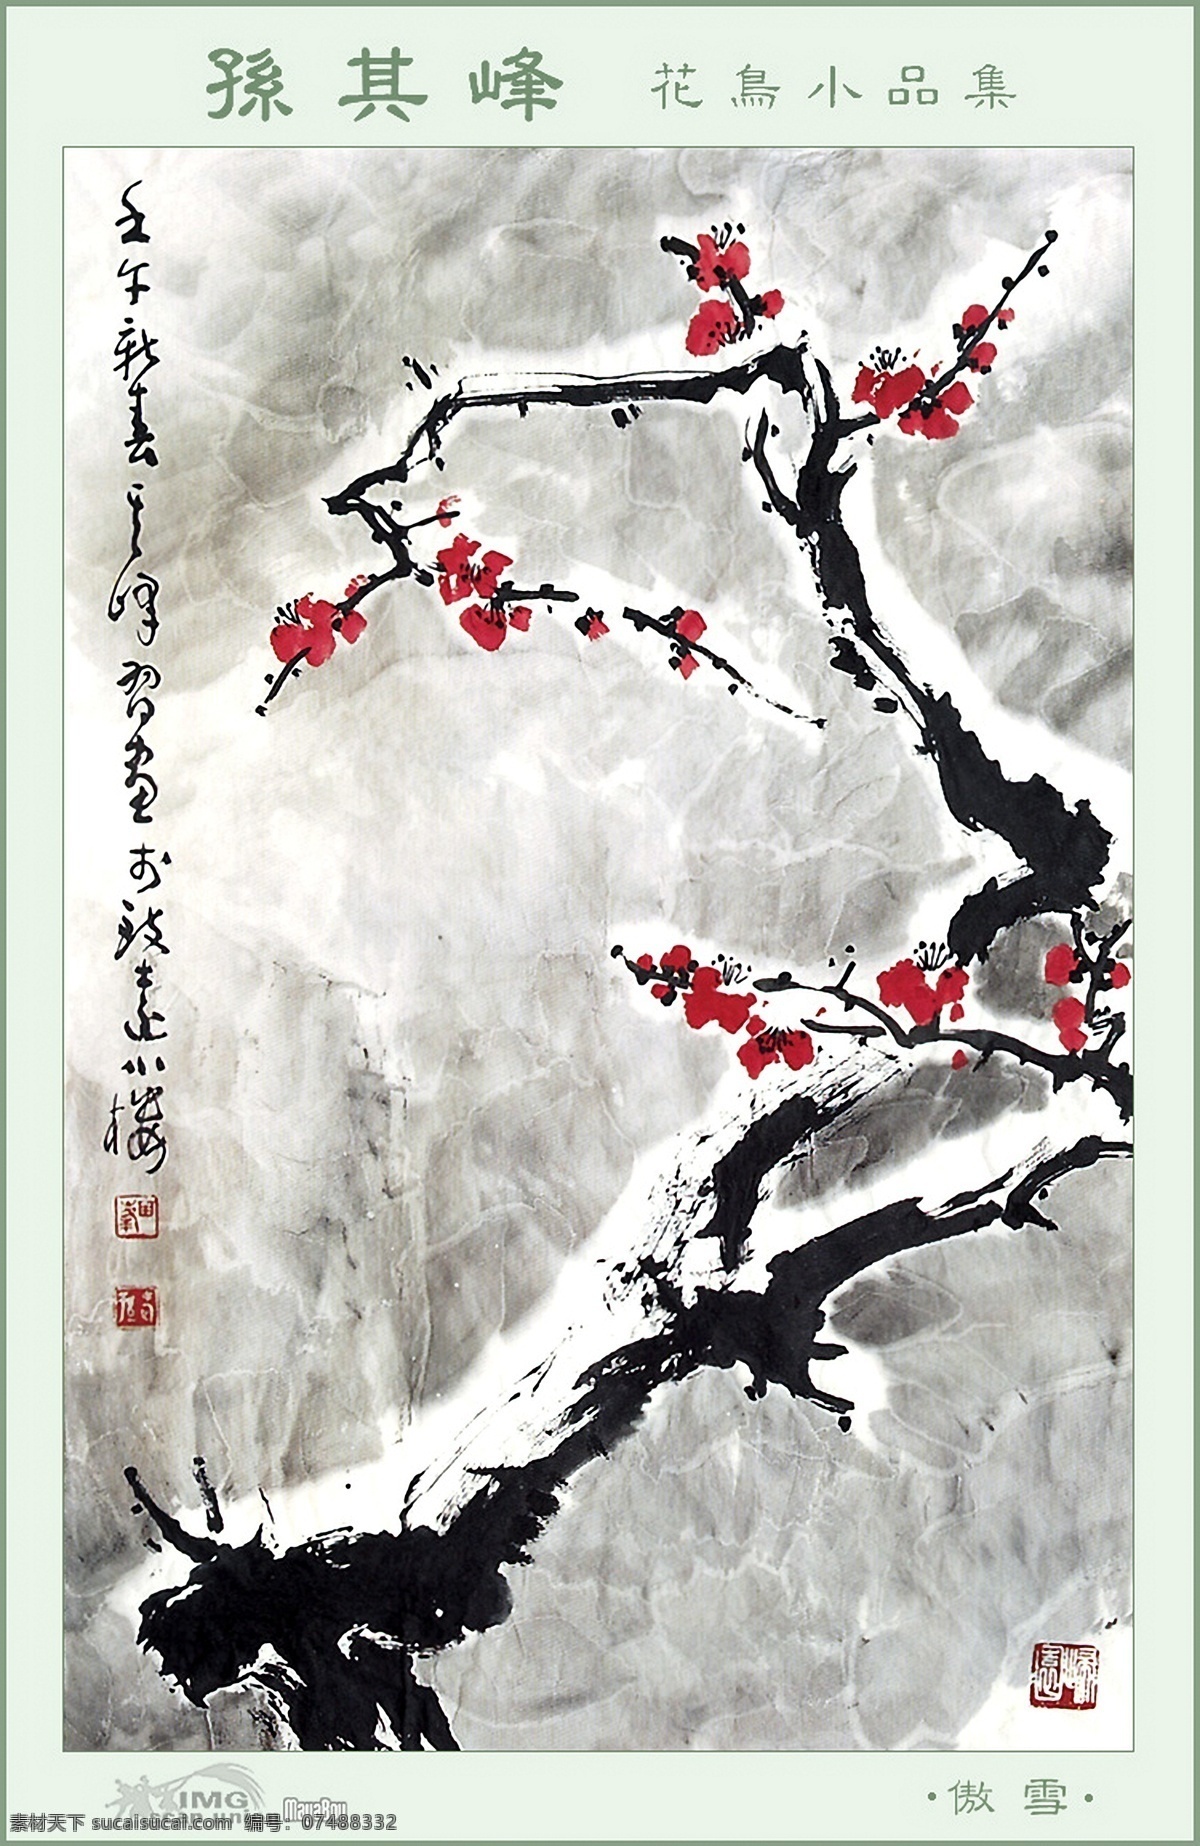 文化 艺术 花鸟画 中国风 植物 梅花 积雪 绽放 书画文字 文化艺术 白色